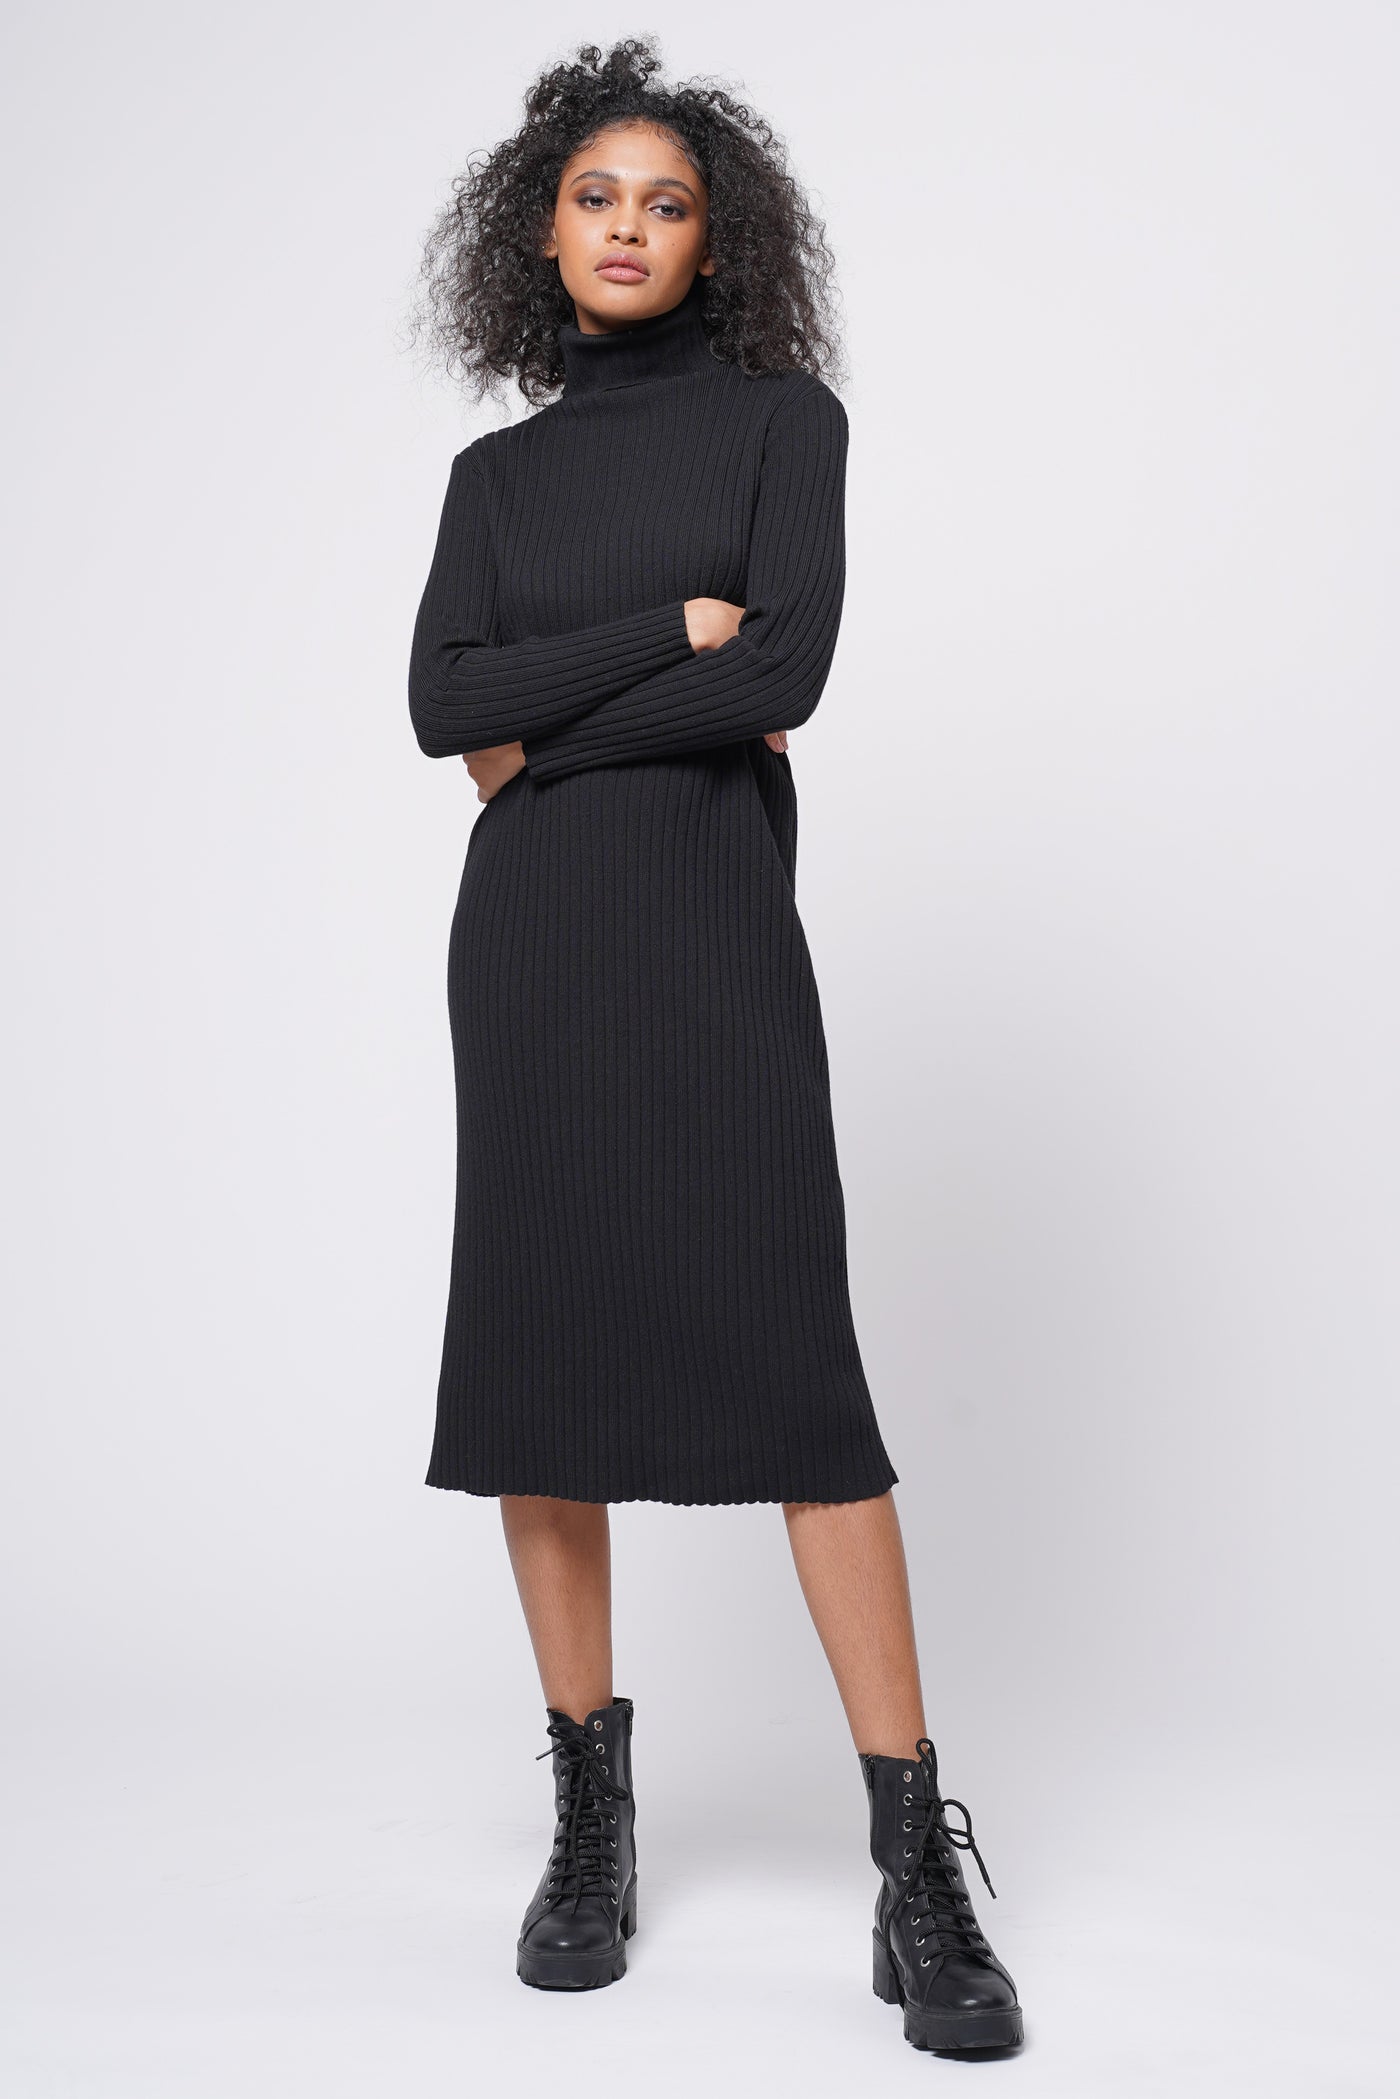 Hard To Forget Knit Turtleneck Dress - Black